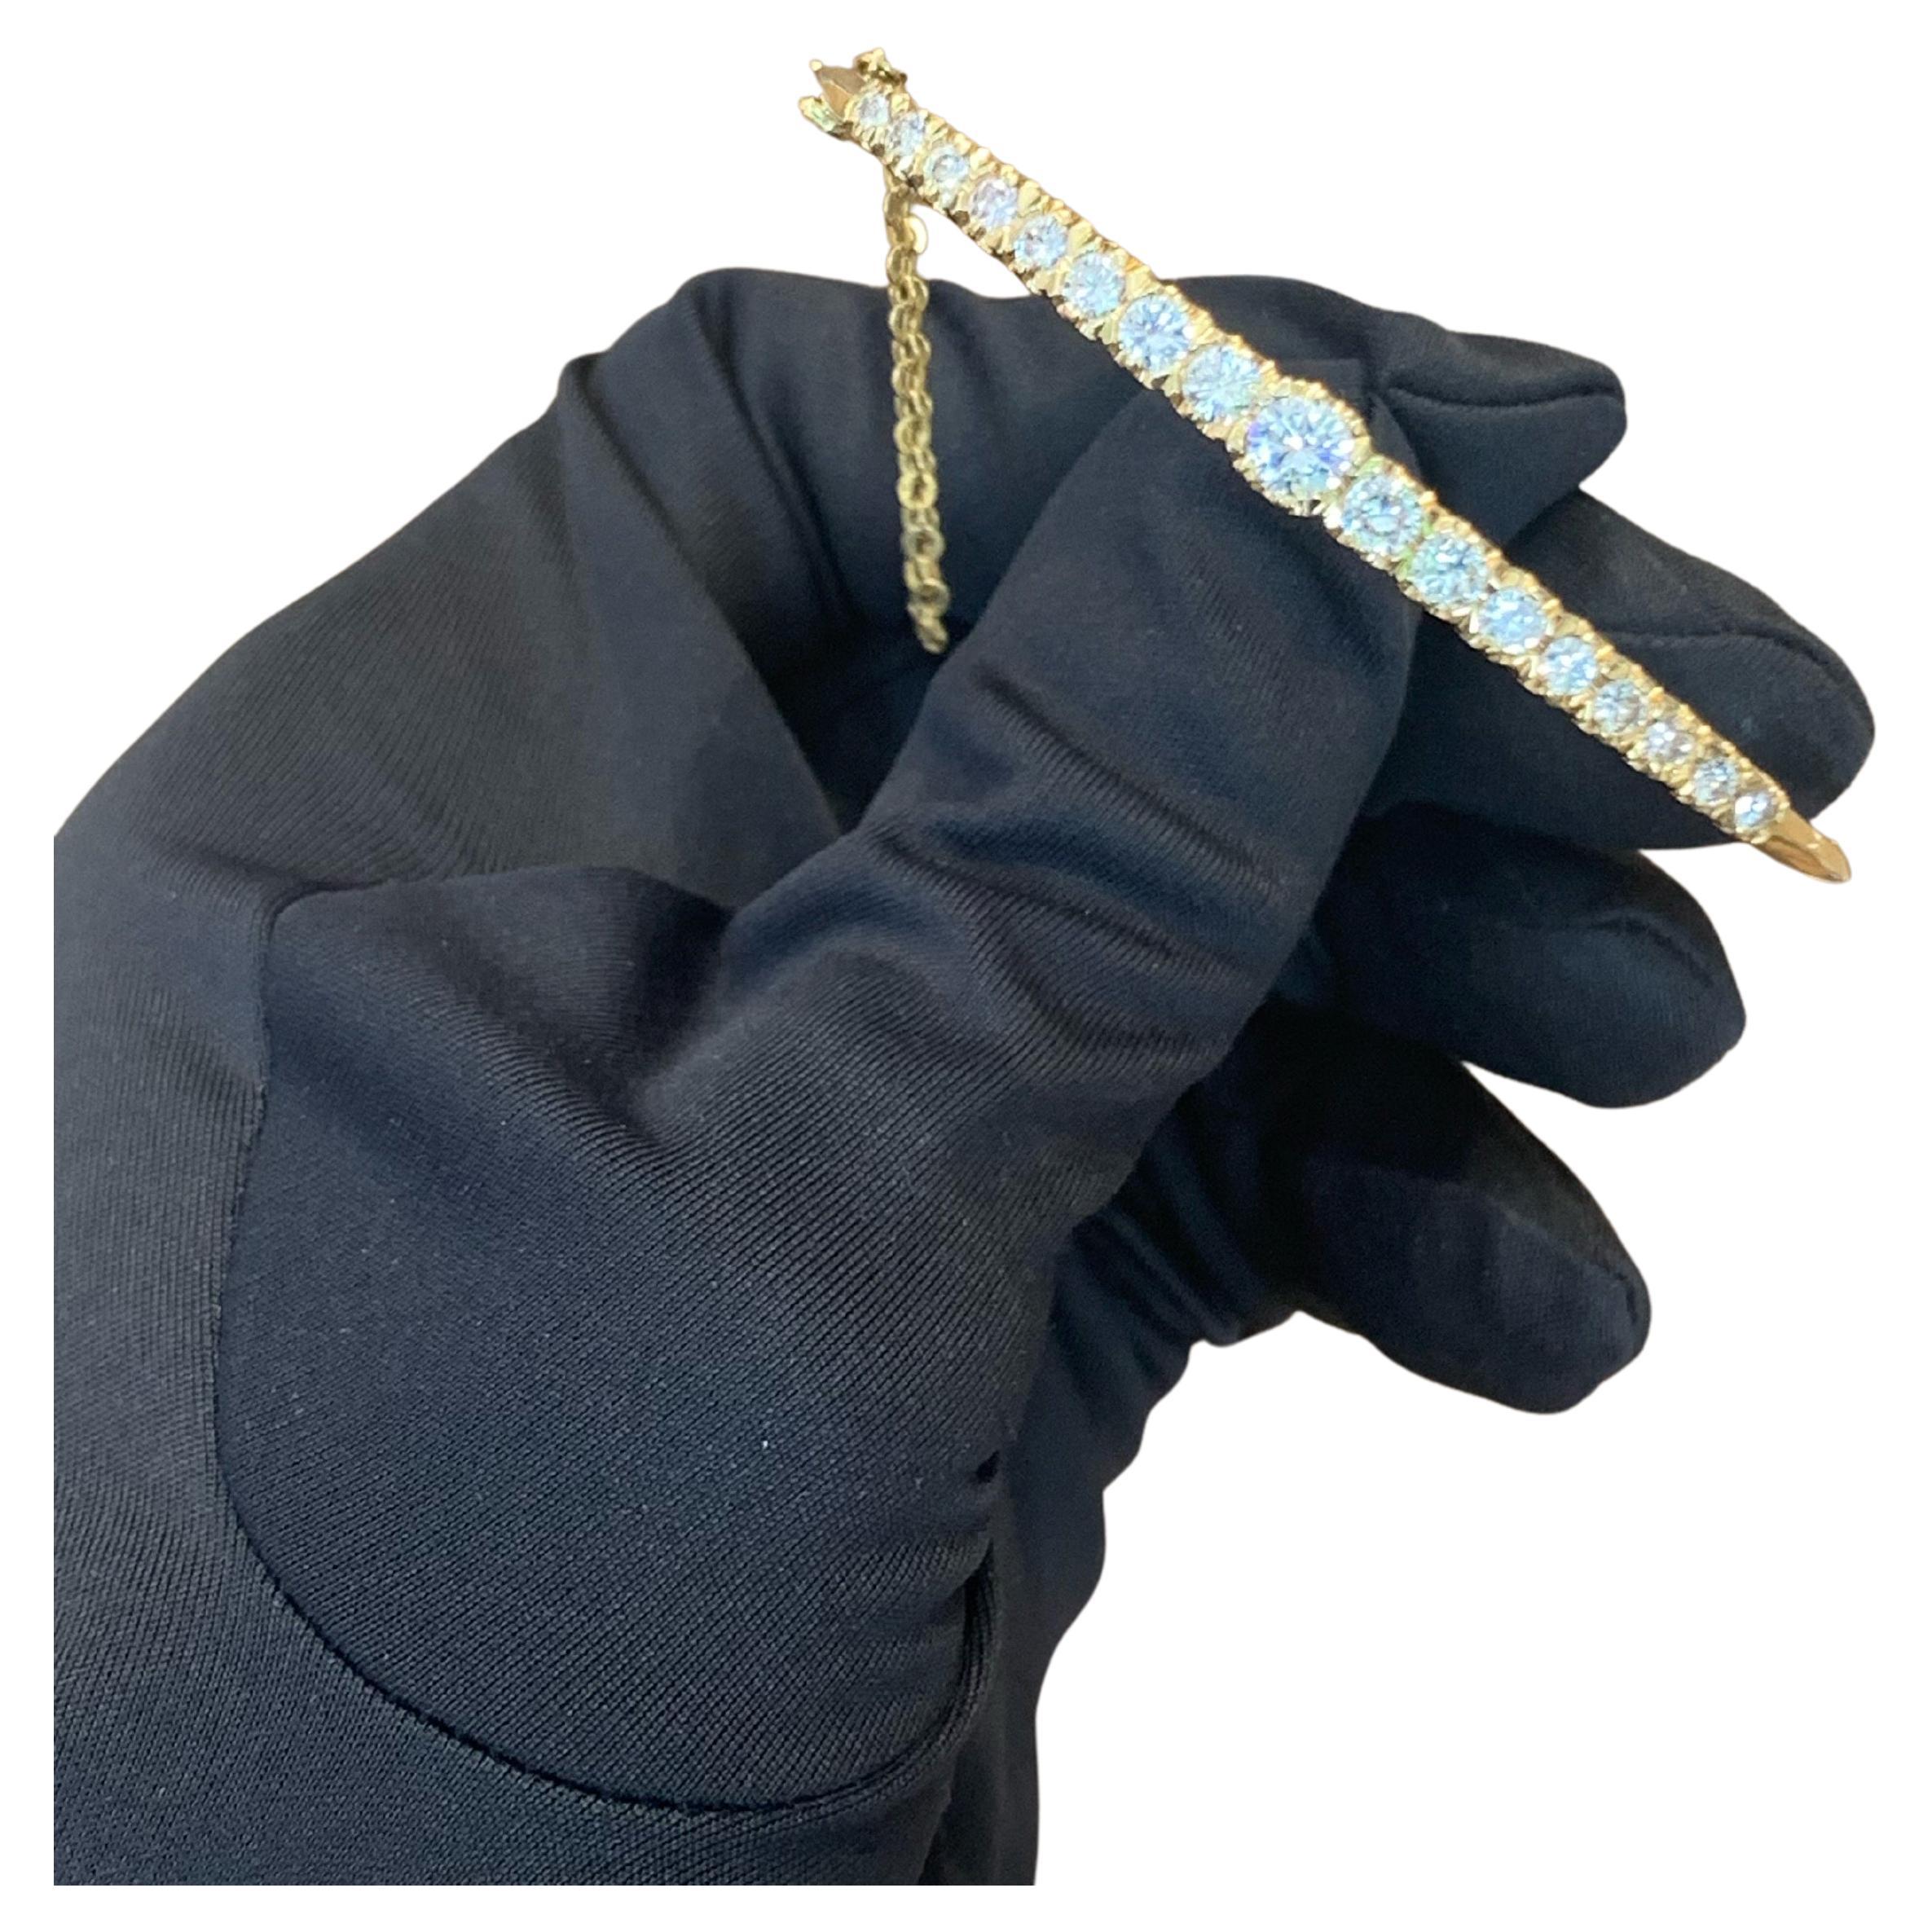 18k Gold 5.0 Carats Diamond Bangle Bracelet For Sale